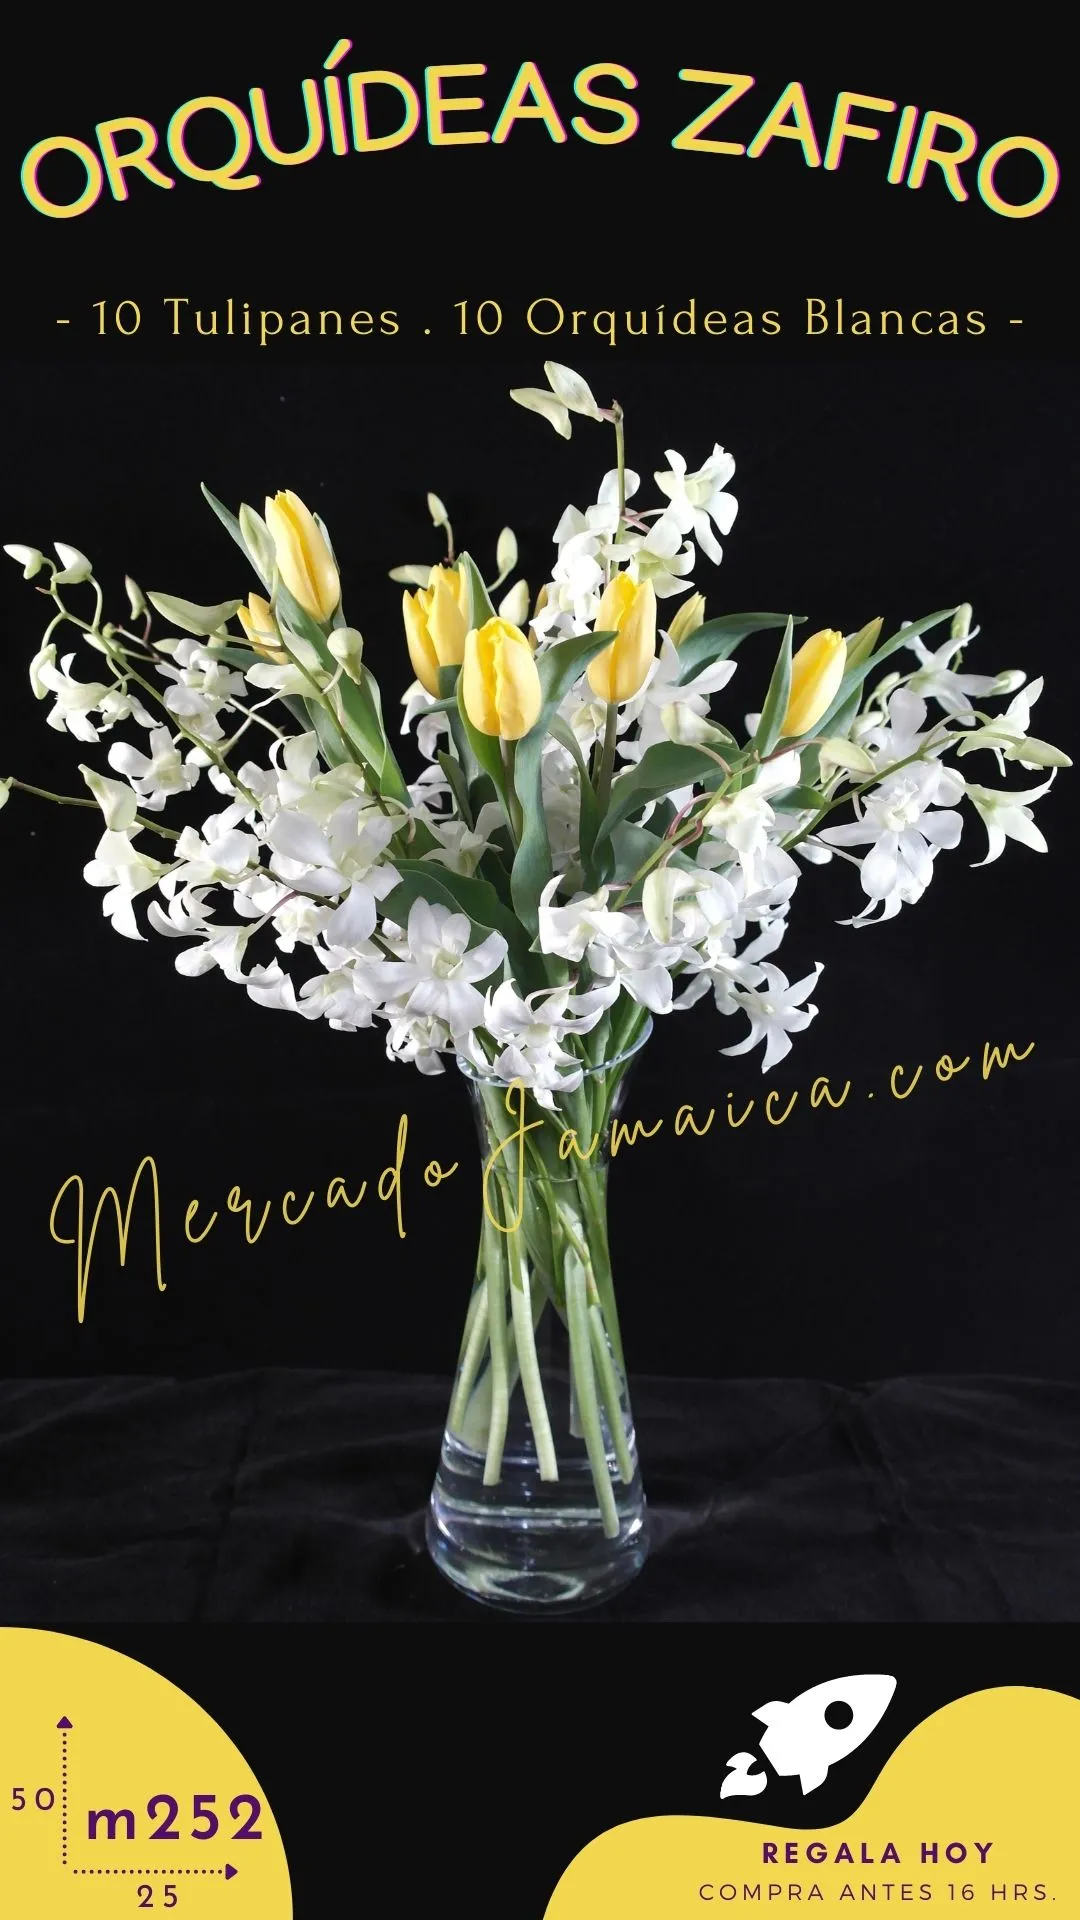 Arreglo con flores orquideas blancas zafiro !